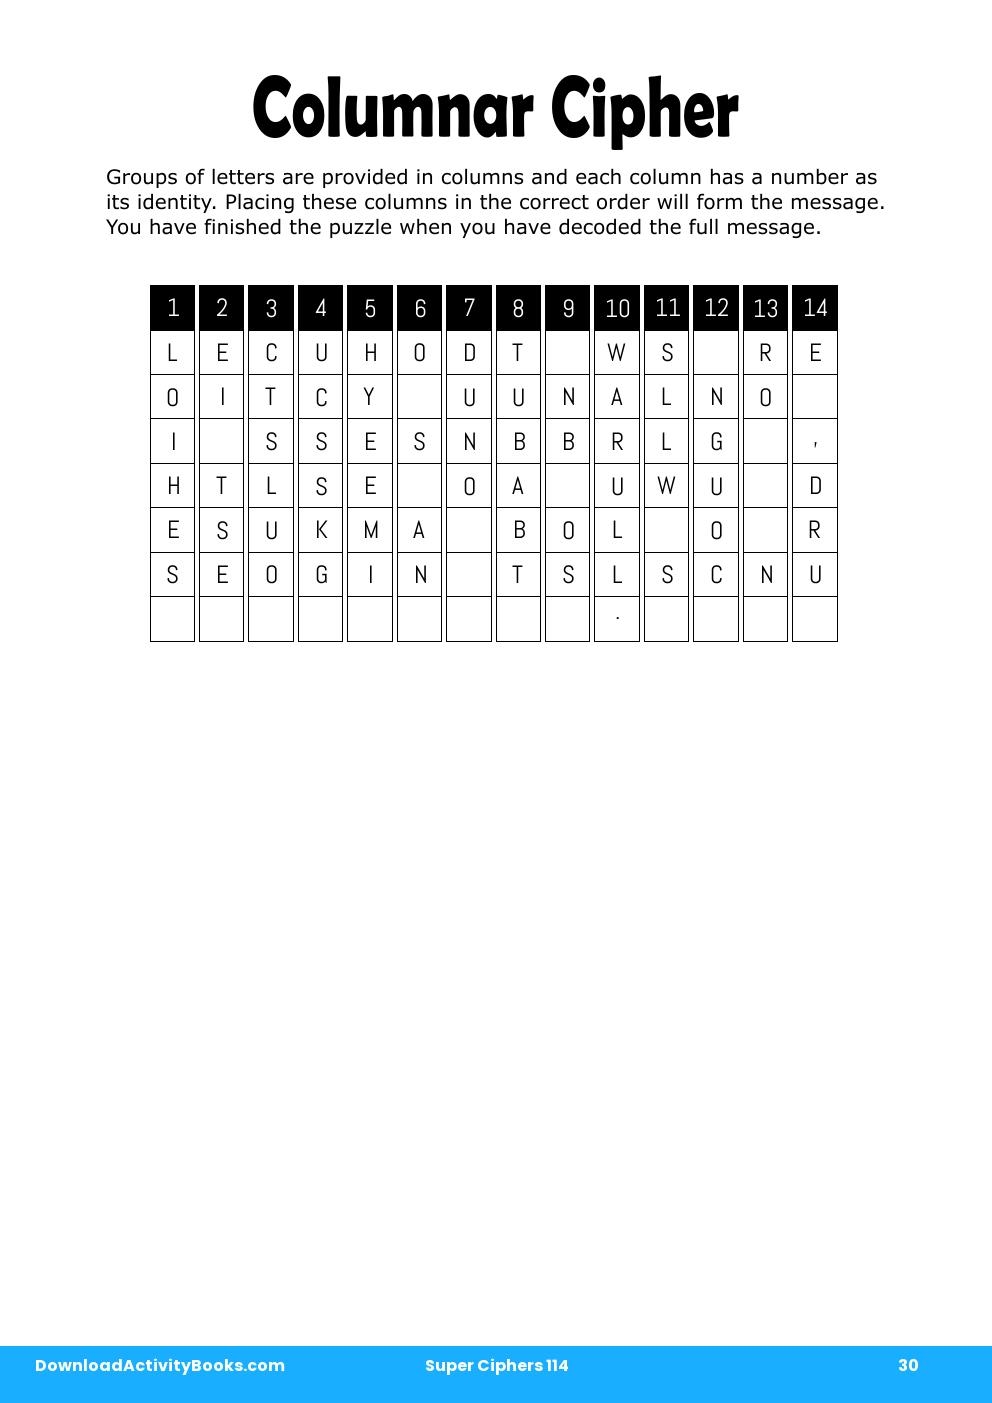 Columnar Cipher in Super Ciphers 114